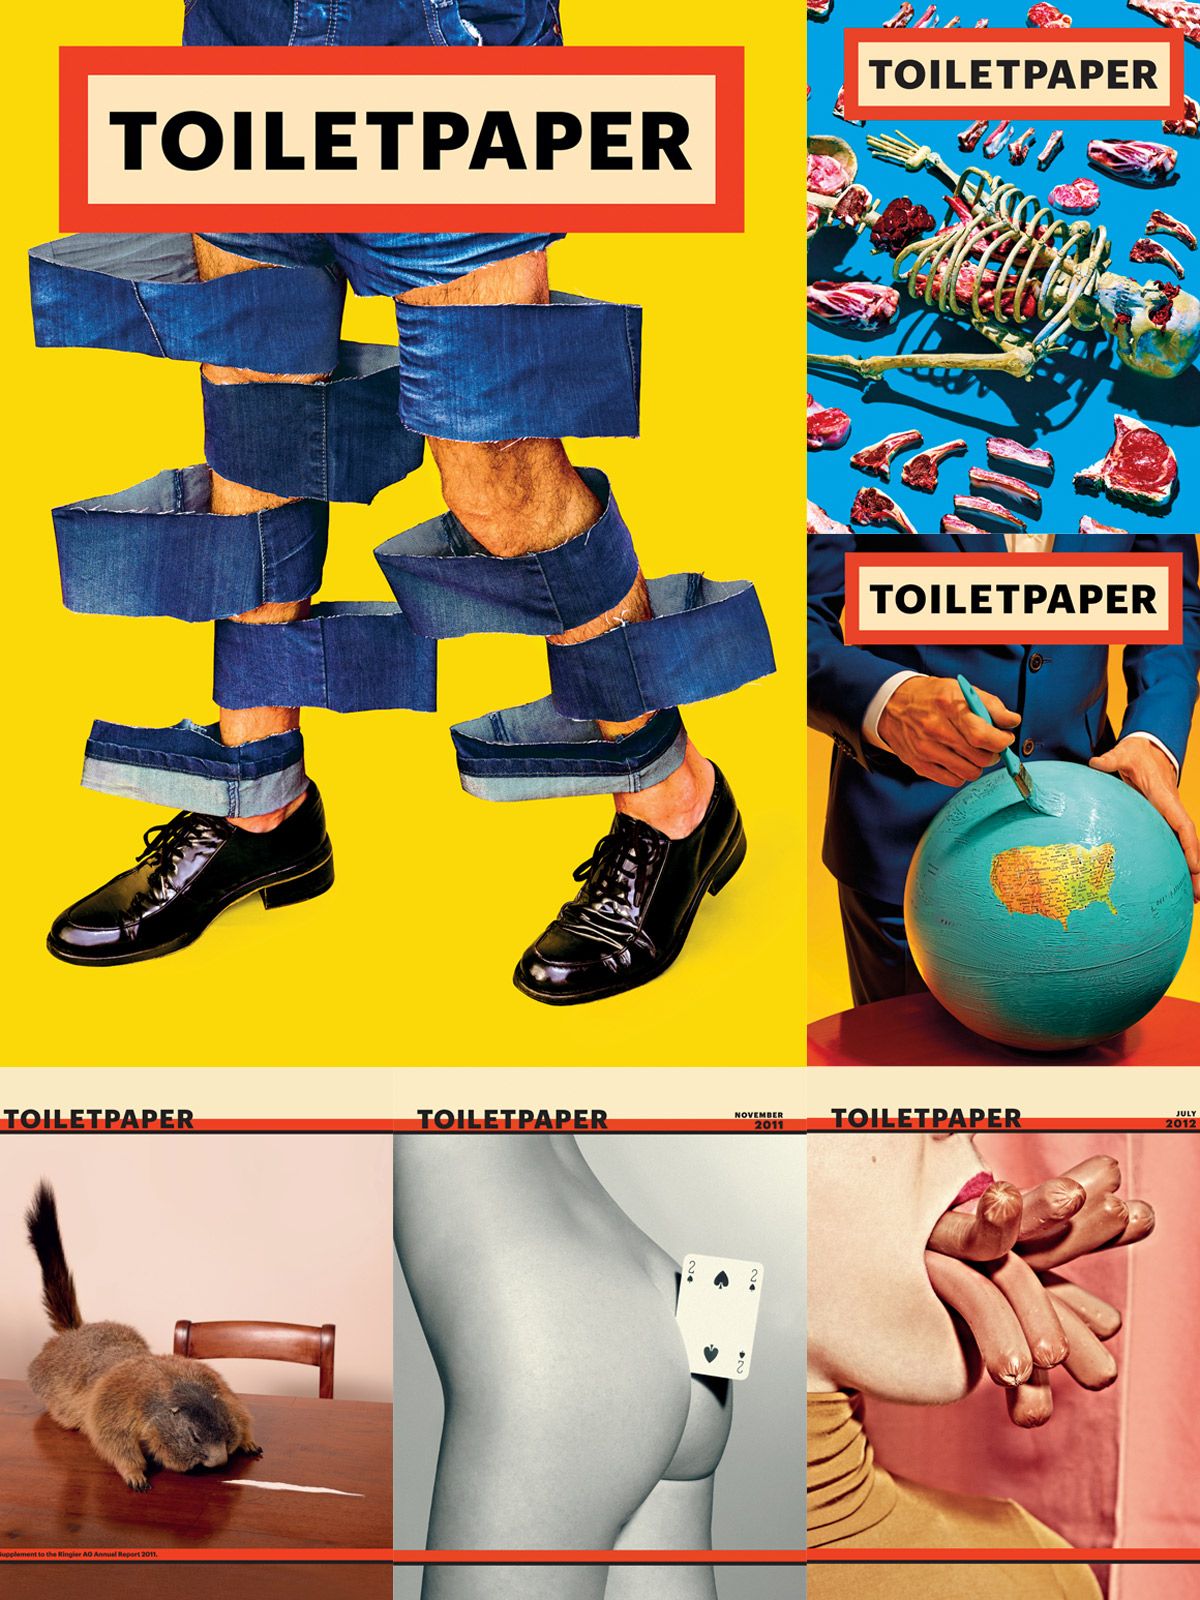 トイレットペーパーマガジン/ toilet paper magazine - 雑誌